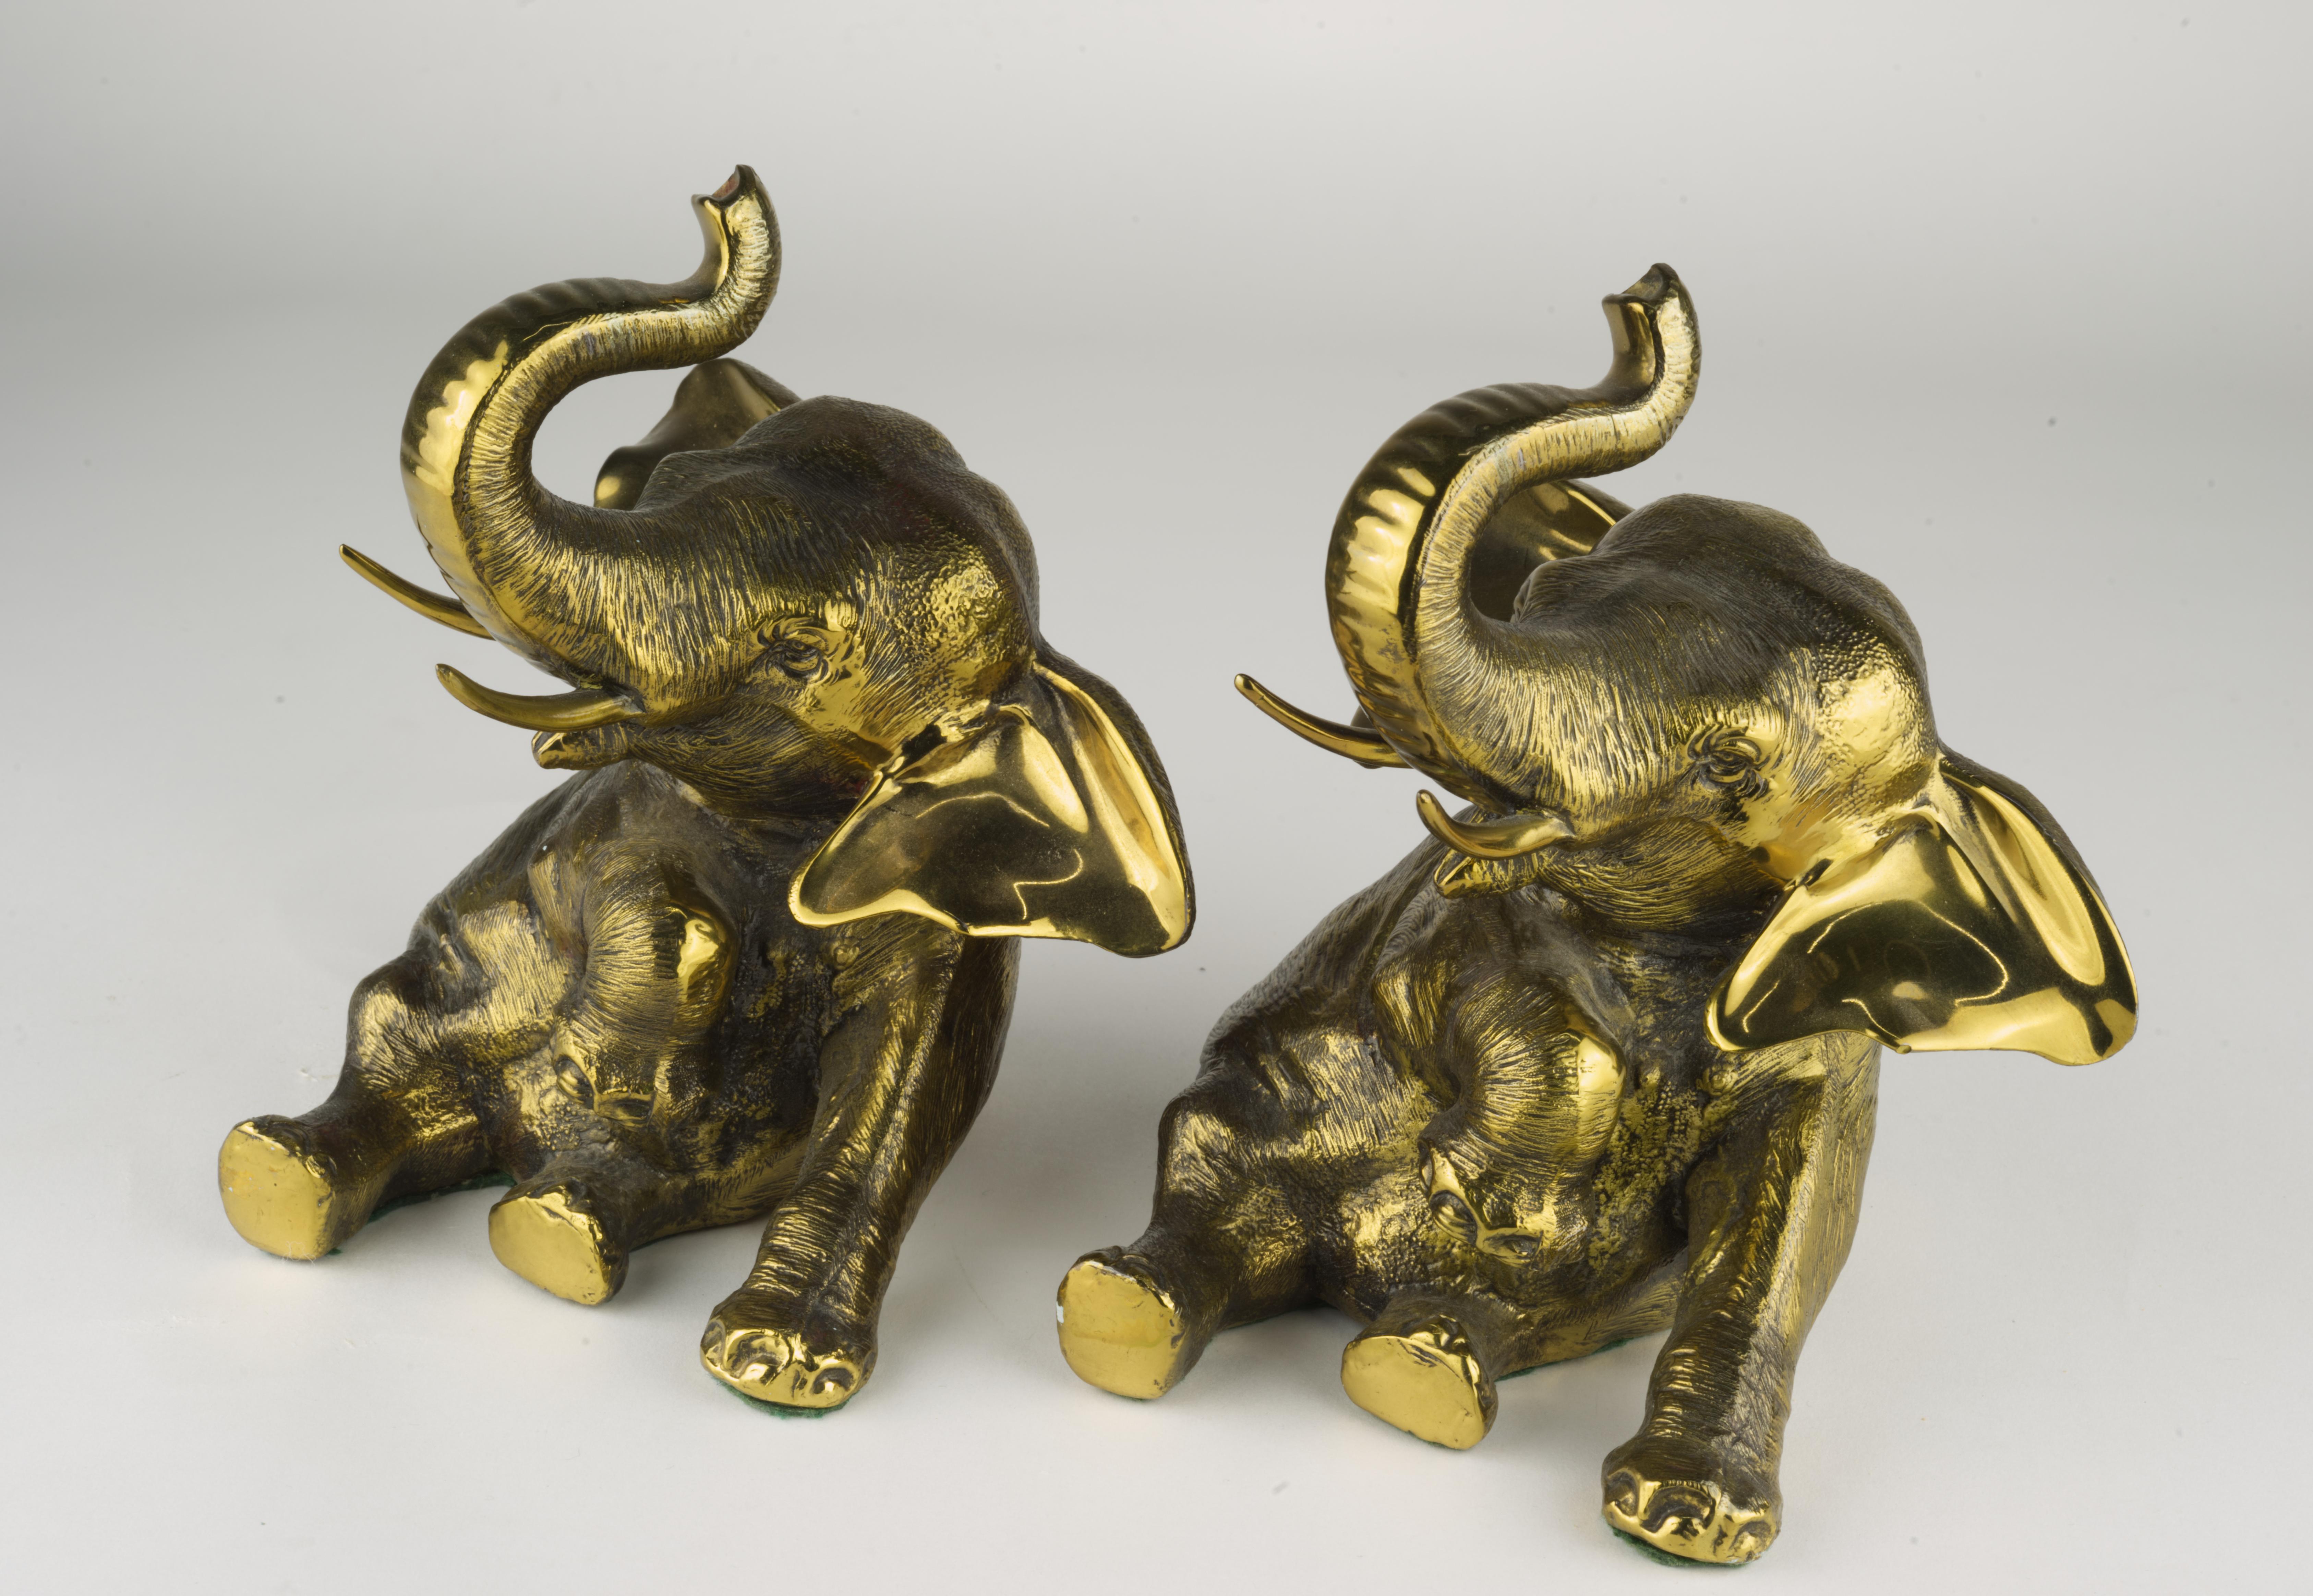  Das seltene Paar Elefanten-Buchstützen aus Bronze wurde von Jennings Brothers in den 1920er-1930er Jahren hergestellt. Beide Stücke haben ihre schöne Patina und die originalen Filzböden behalten. Jedes Stück ist auf der Unterseite unter dem Filz